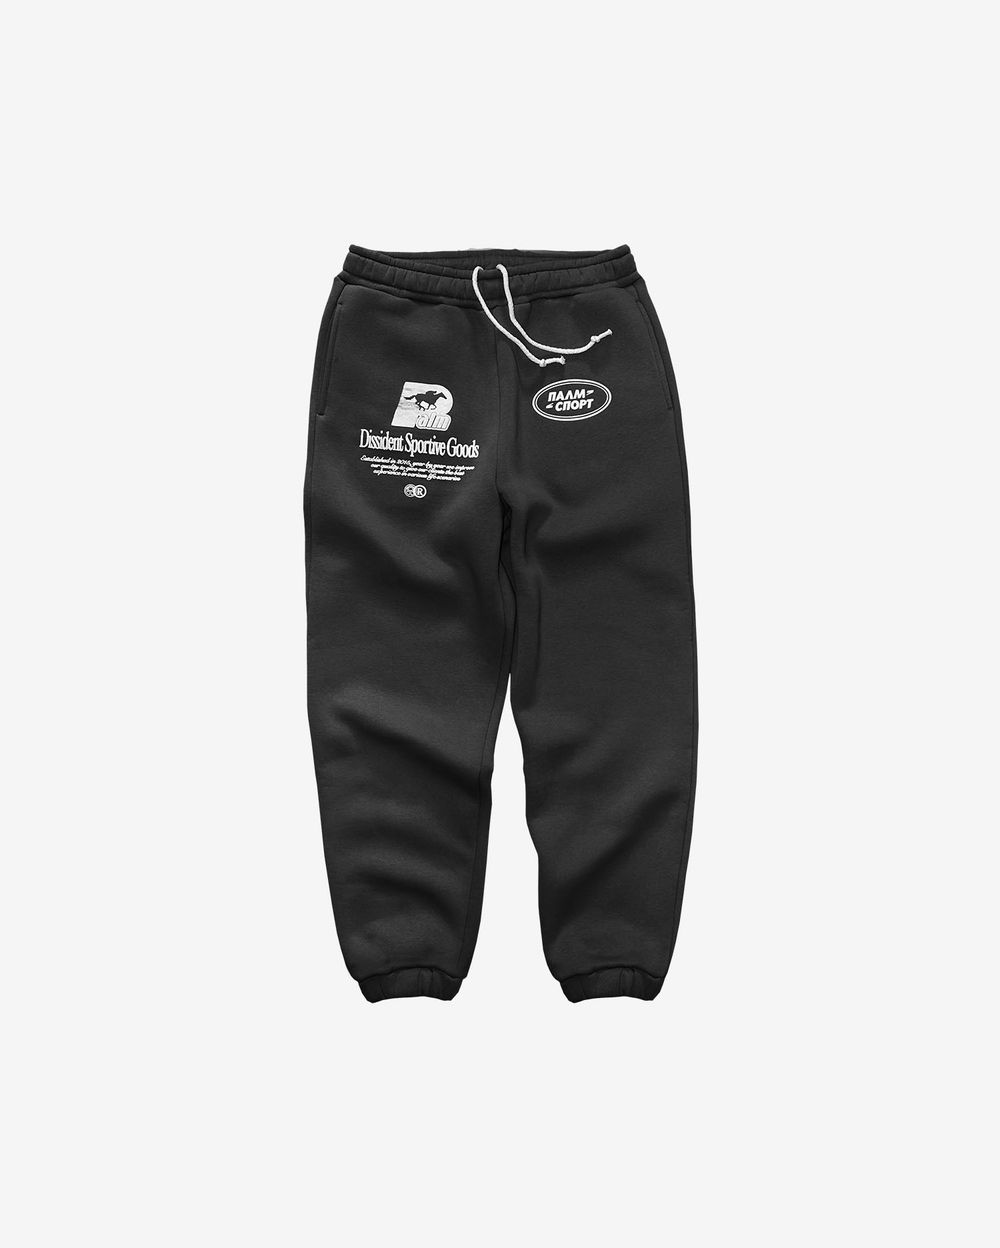 Спортивные штаны Dissident Sportive Goods черные